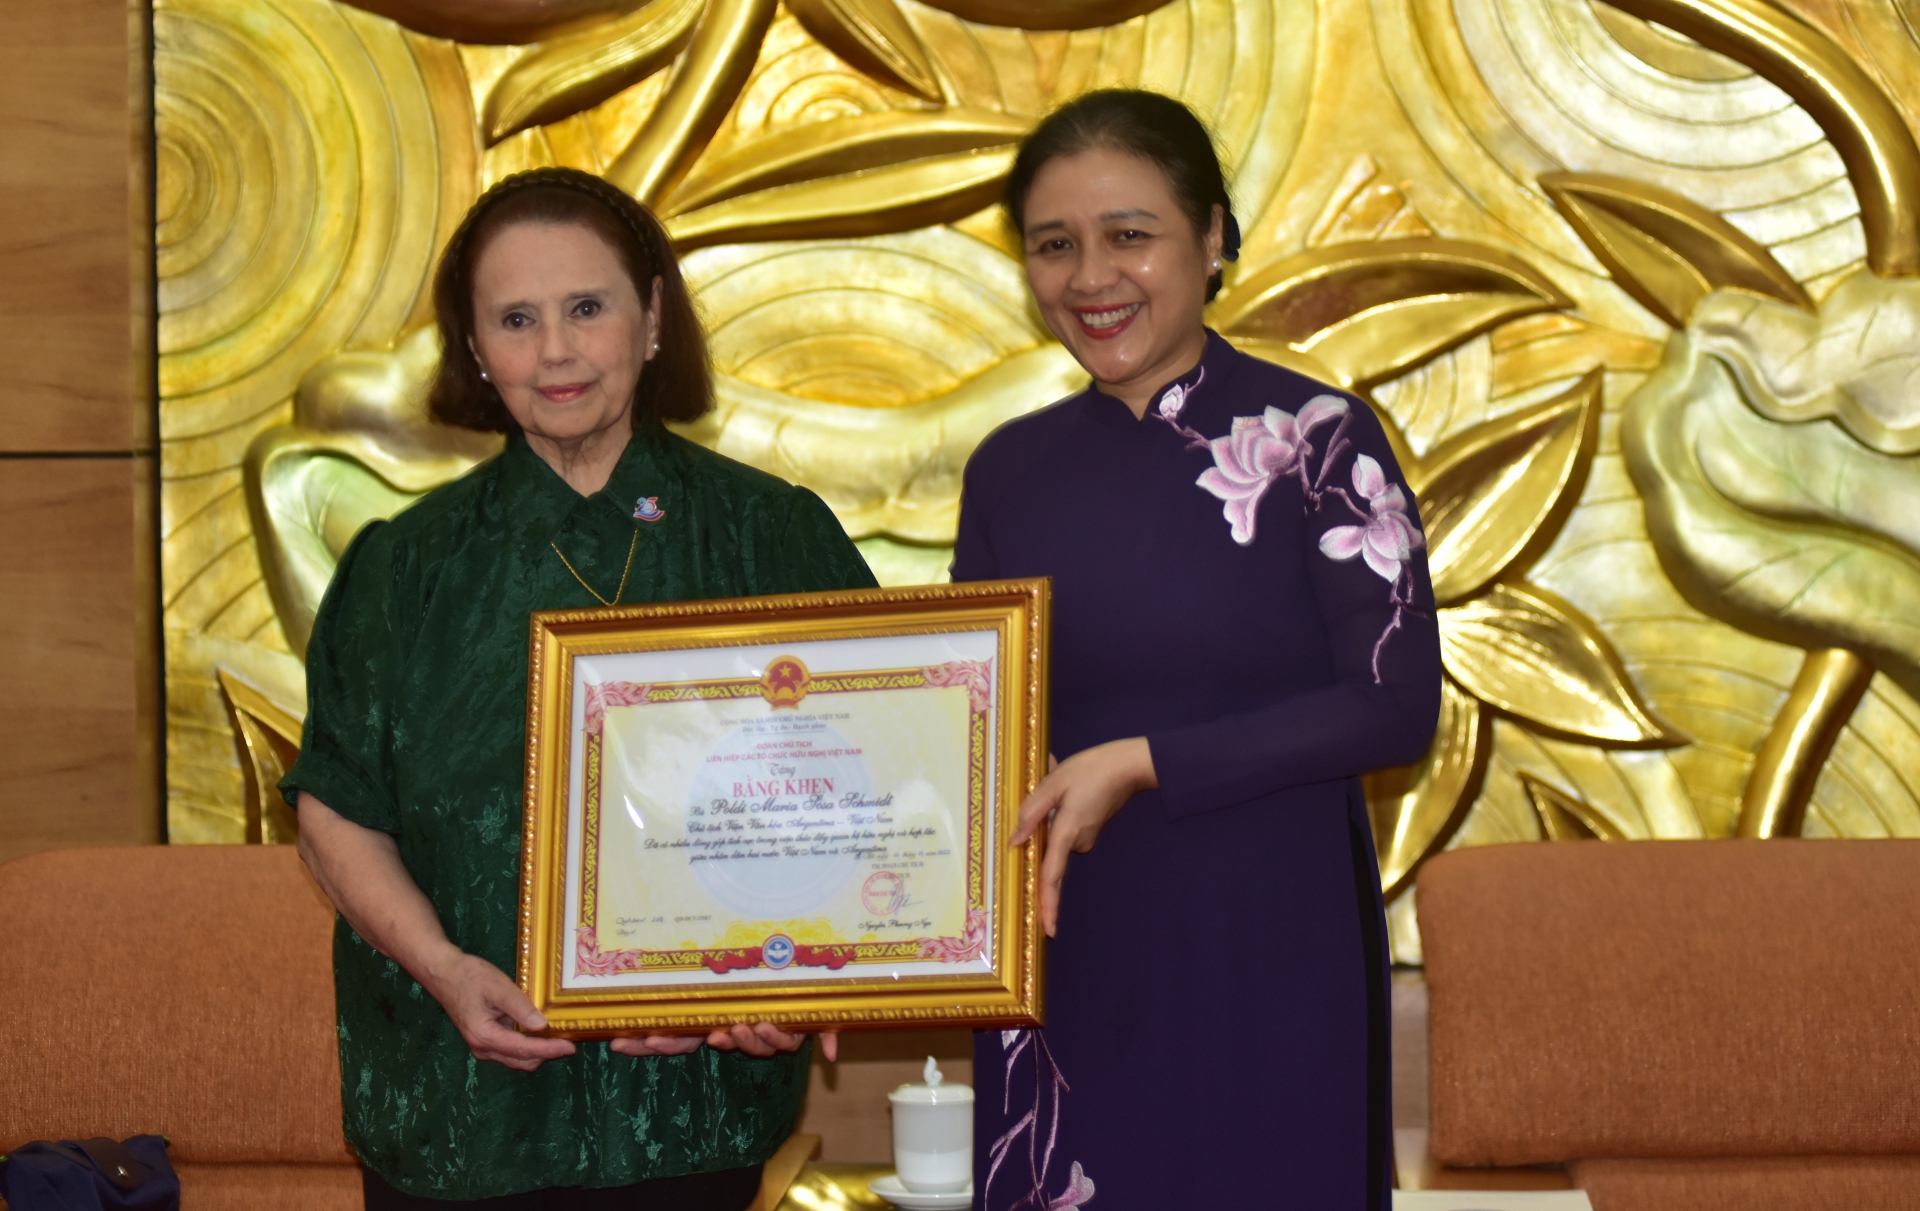 越南友好组织联合会（VUFO）主席阮芳娥向阿越文化研究院(ICAV)院长波尔迪·索萨(Poldi María Sosa Schmidt)颁发奖状。